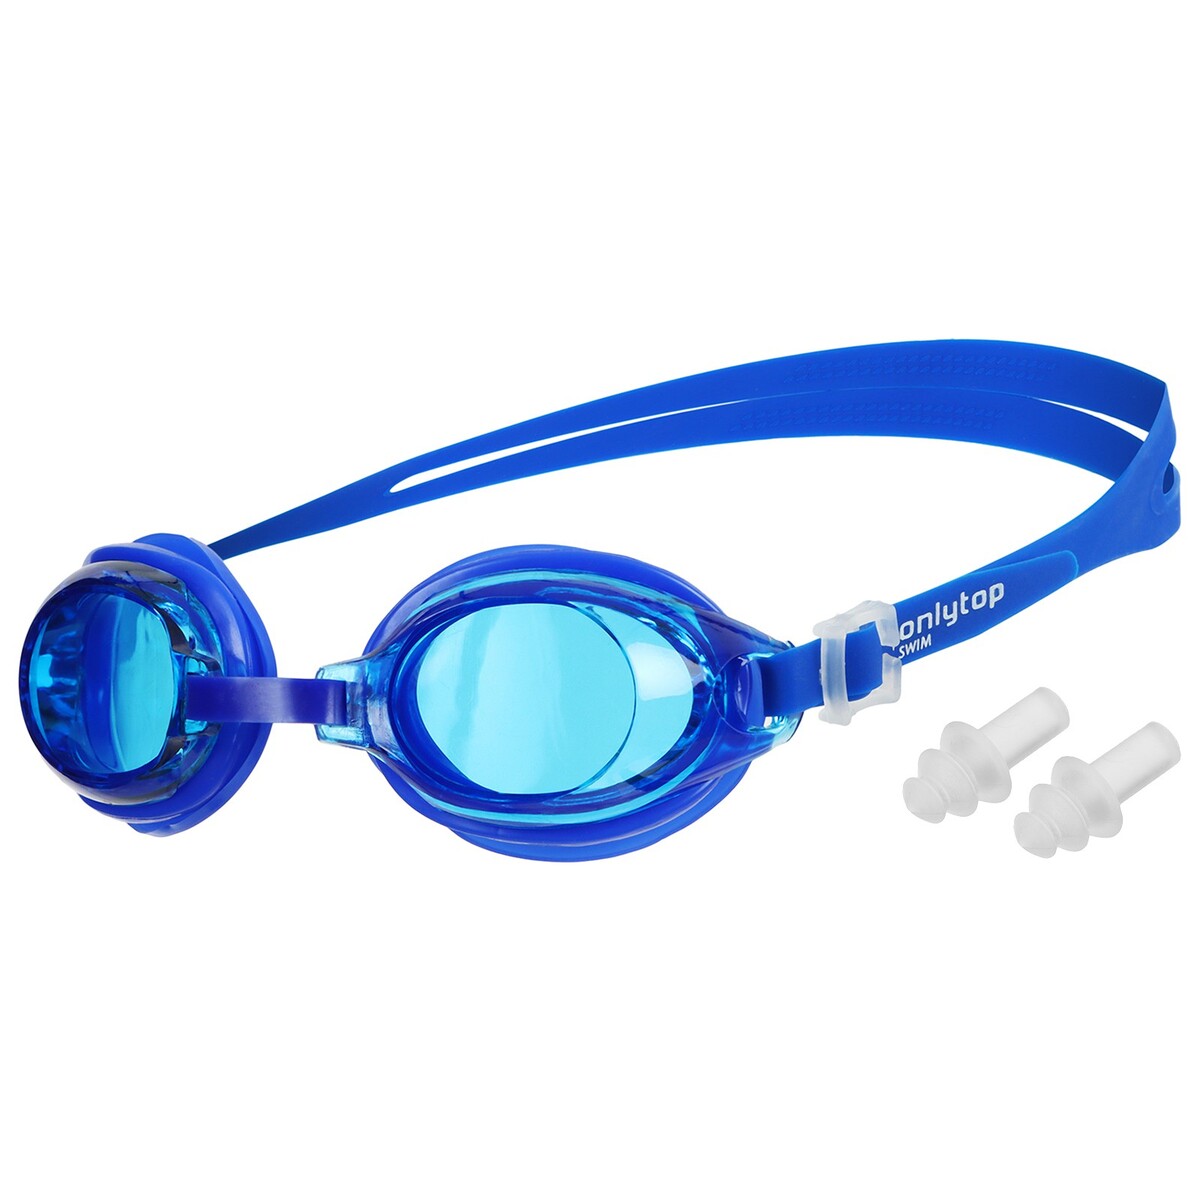 Очки для плавания детские onlytop, беруши, цвет синий очки для плавания onlytop беруши синий